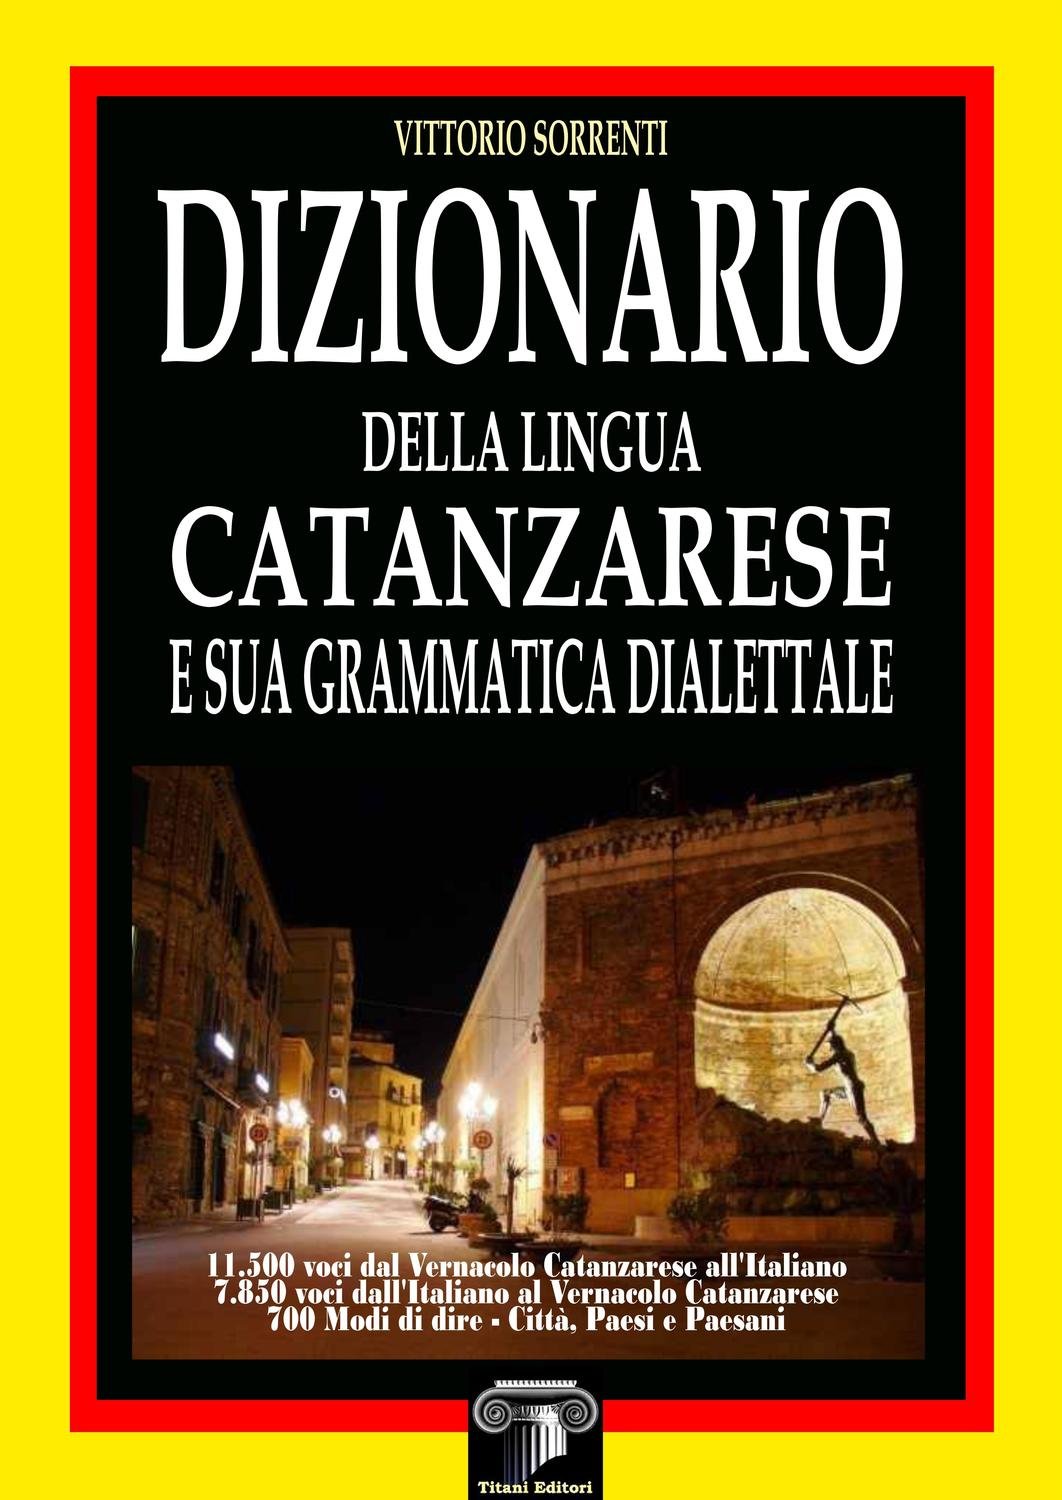 DIZIONARIO DELLA LINGUA CATANZARESE - V. SORRENTI